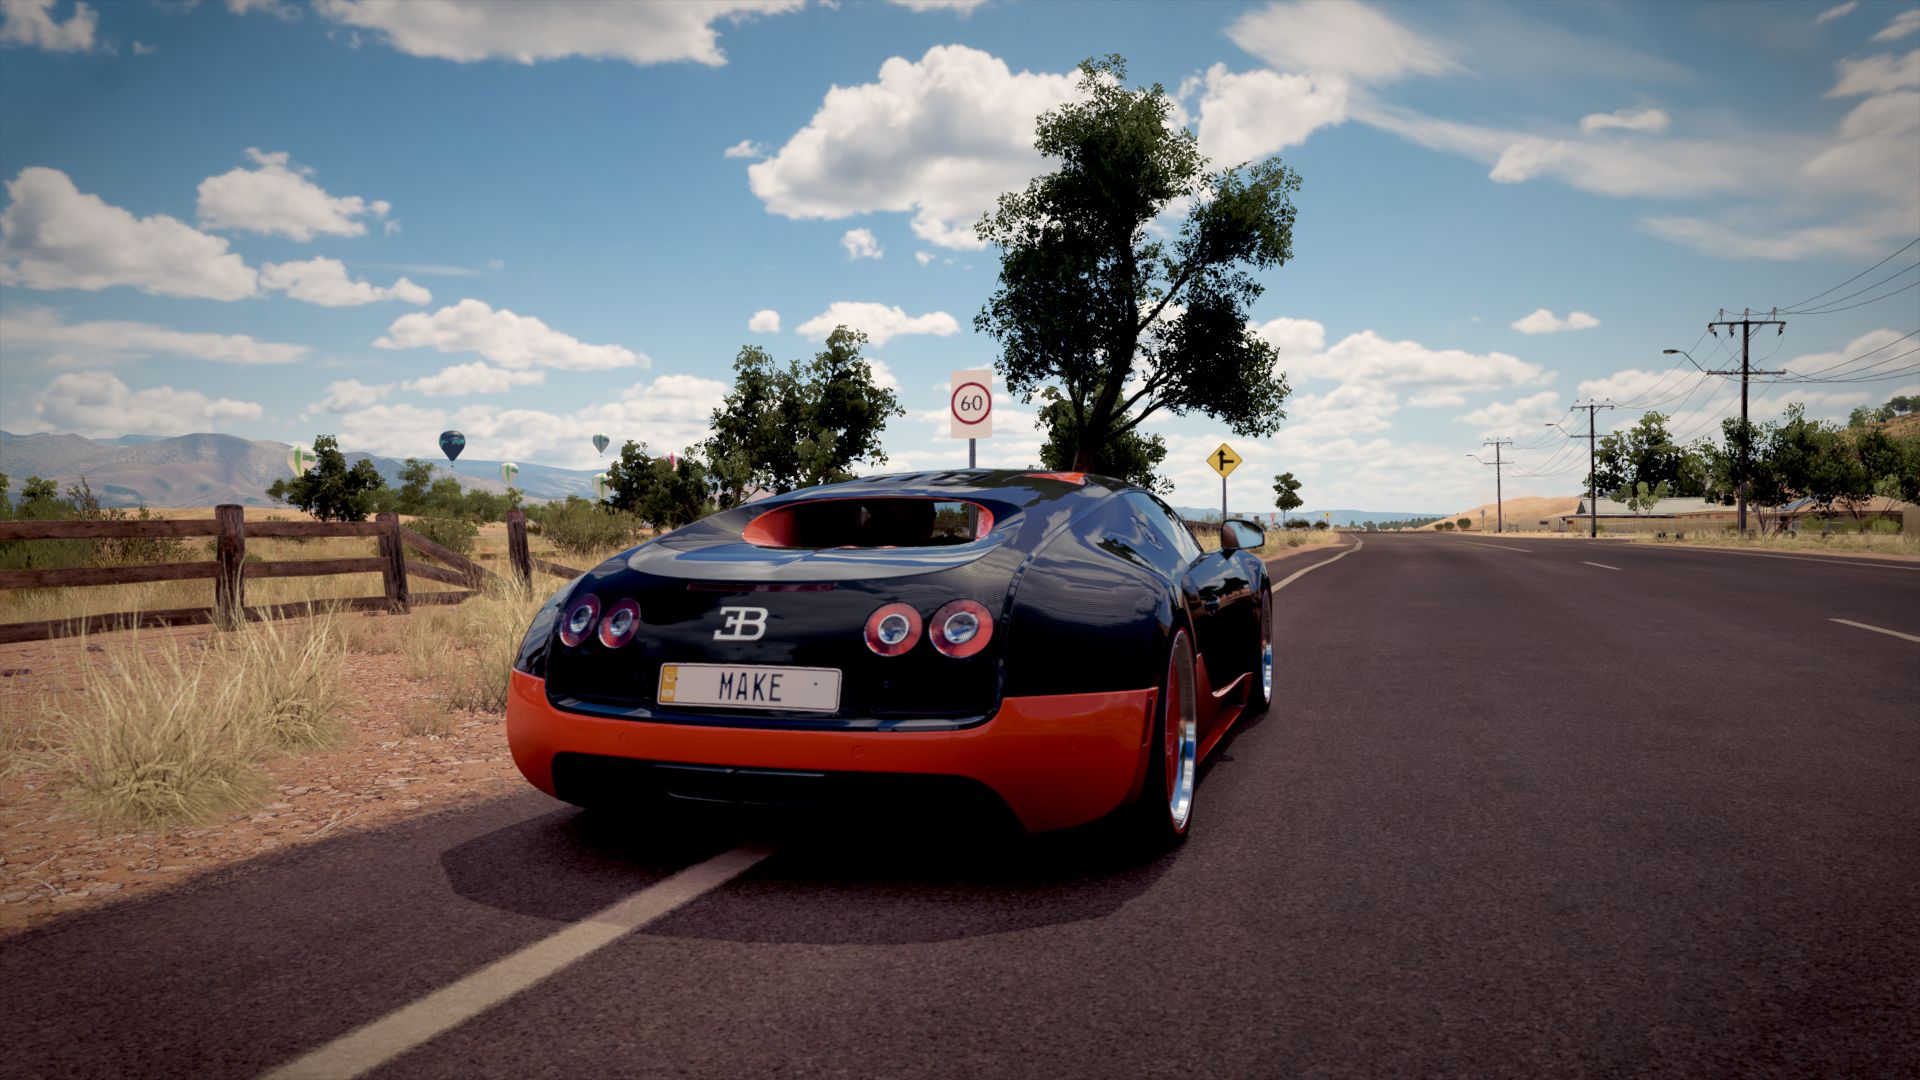 Descarga gratuita de fondo de pantalla para móvil de Fuerza, Carretera, Bugatti Veyron, Videojuego, Forza Horizon 3.